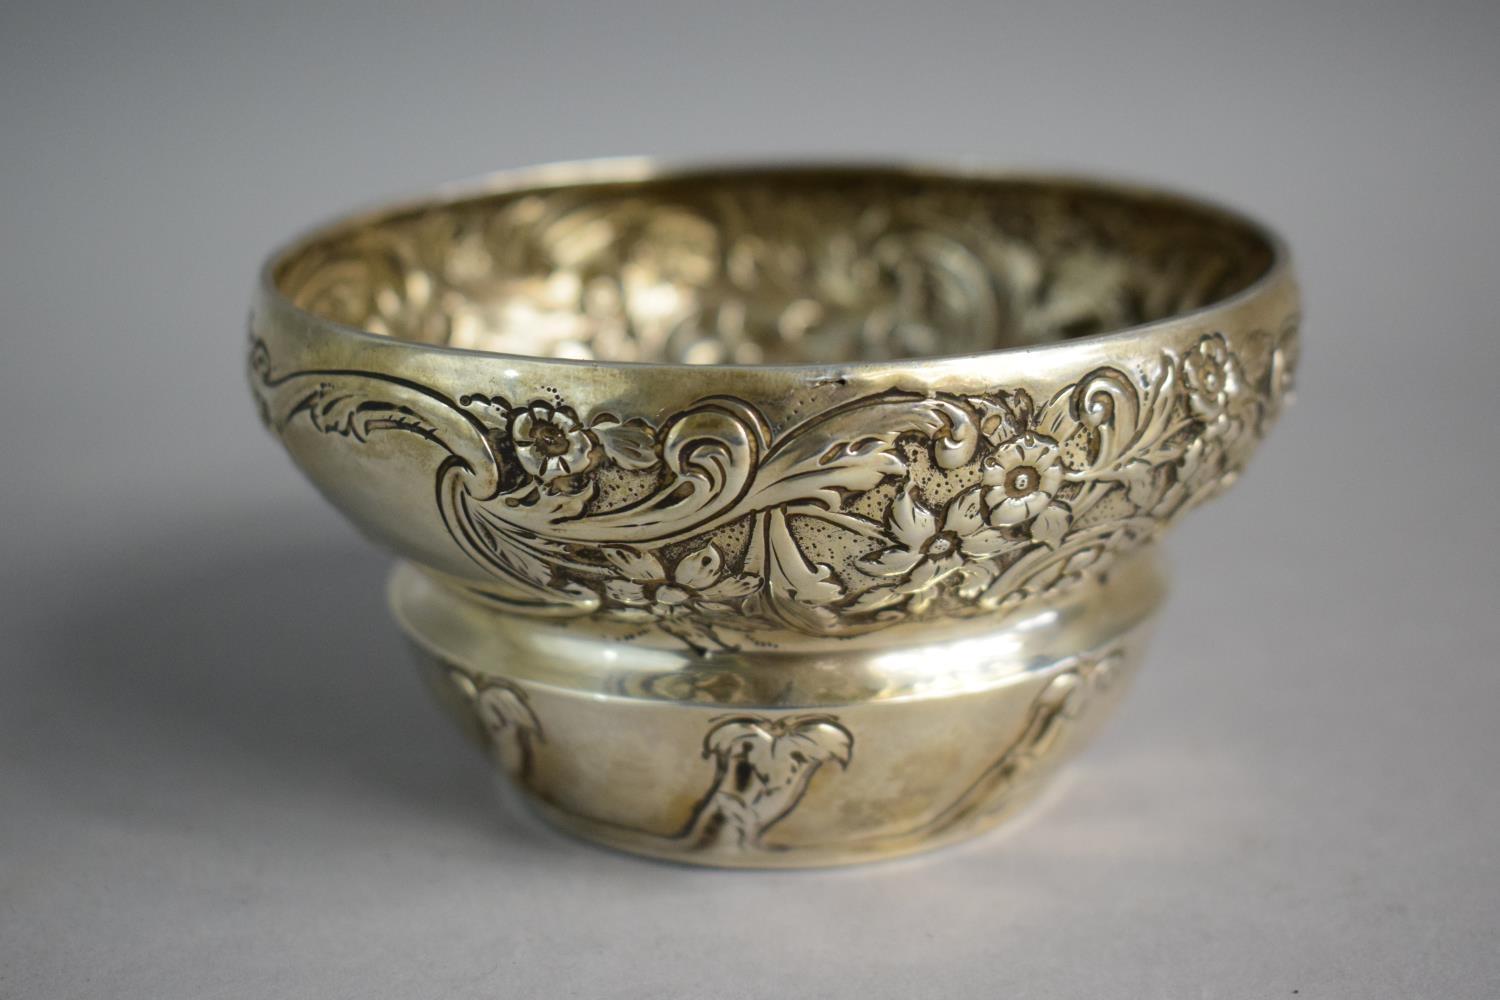 A Silver Sugar Bowl with Art Nouveau Repousse Decoration 11.5cm Diameter. London 1903